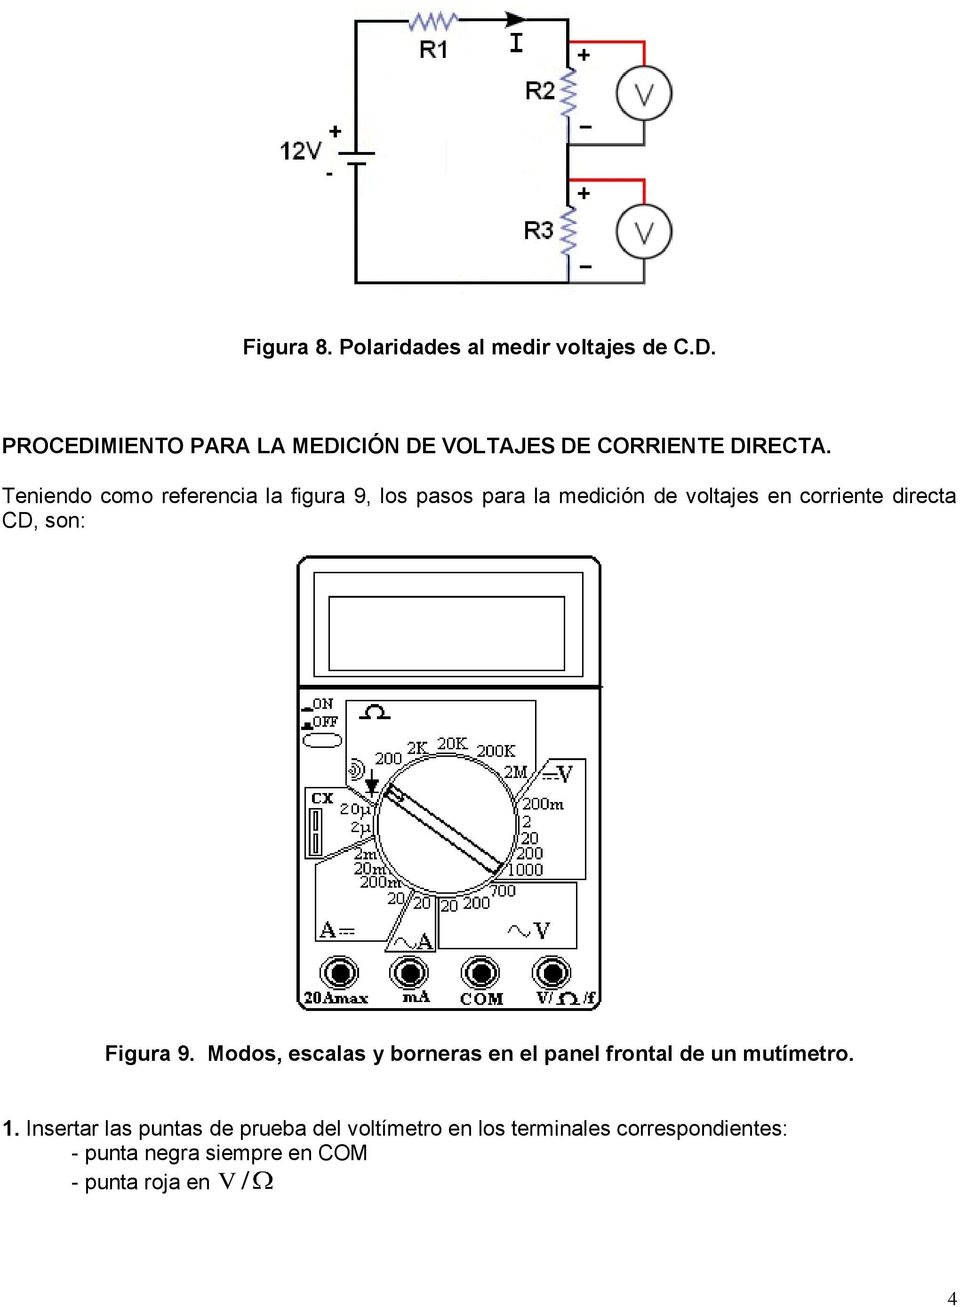 Teniendo como referencia la figura 9, los pasos para la medición de voltajes en corriente directa CD,